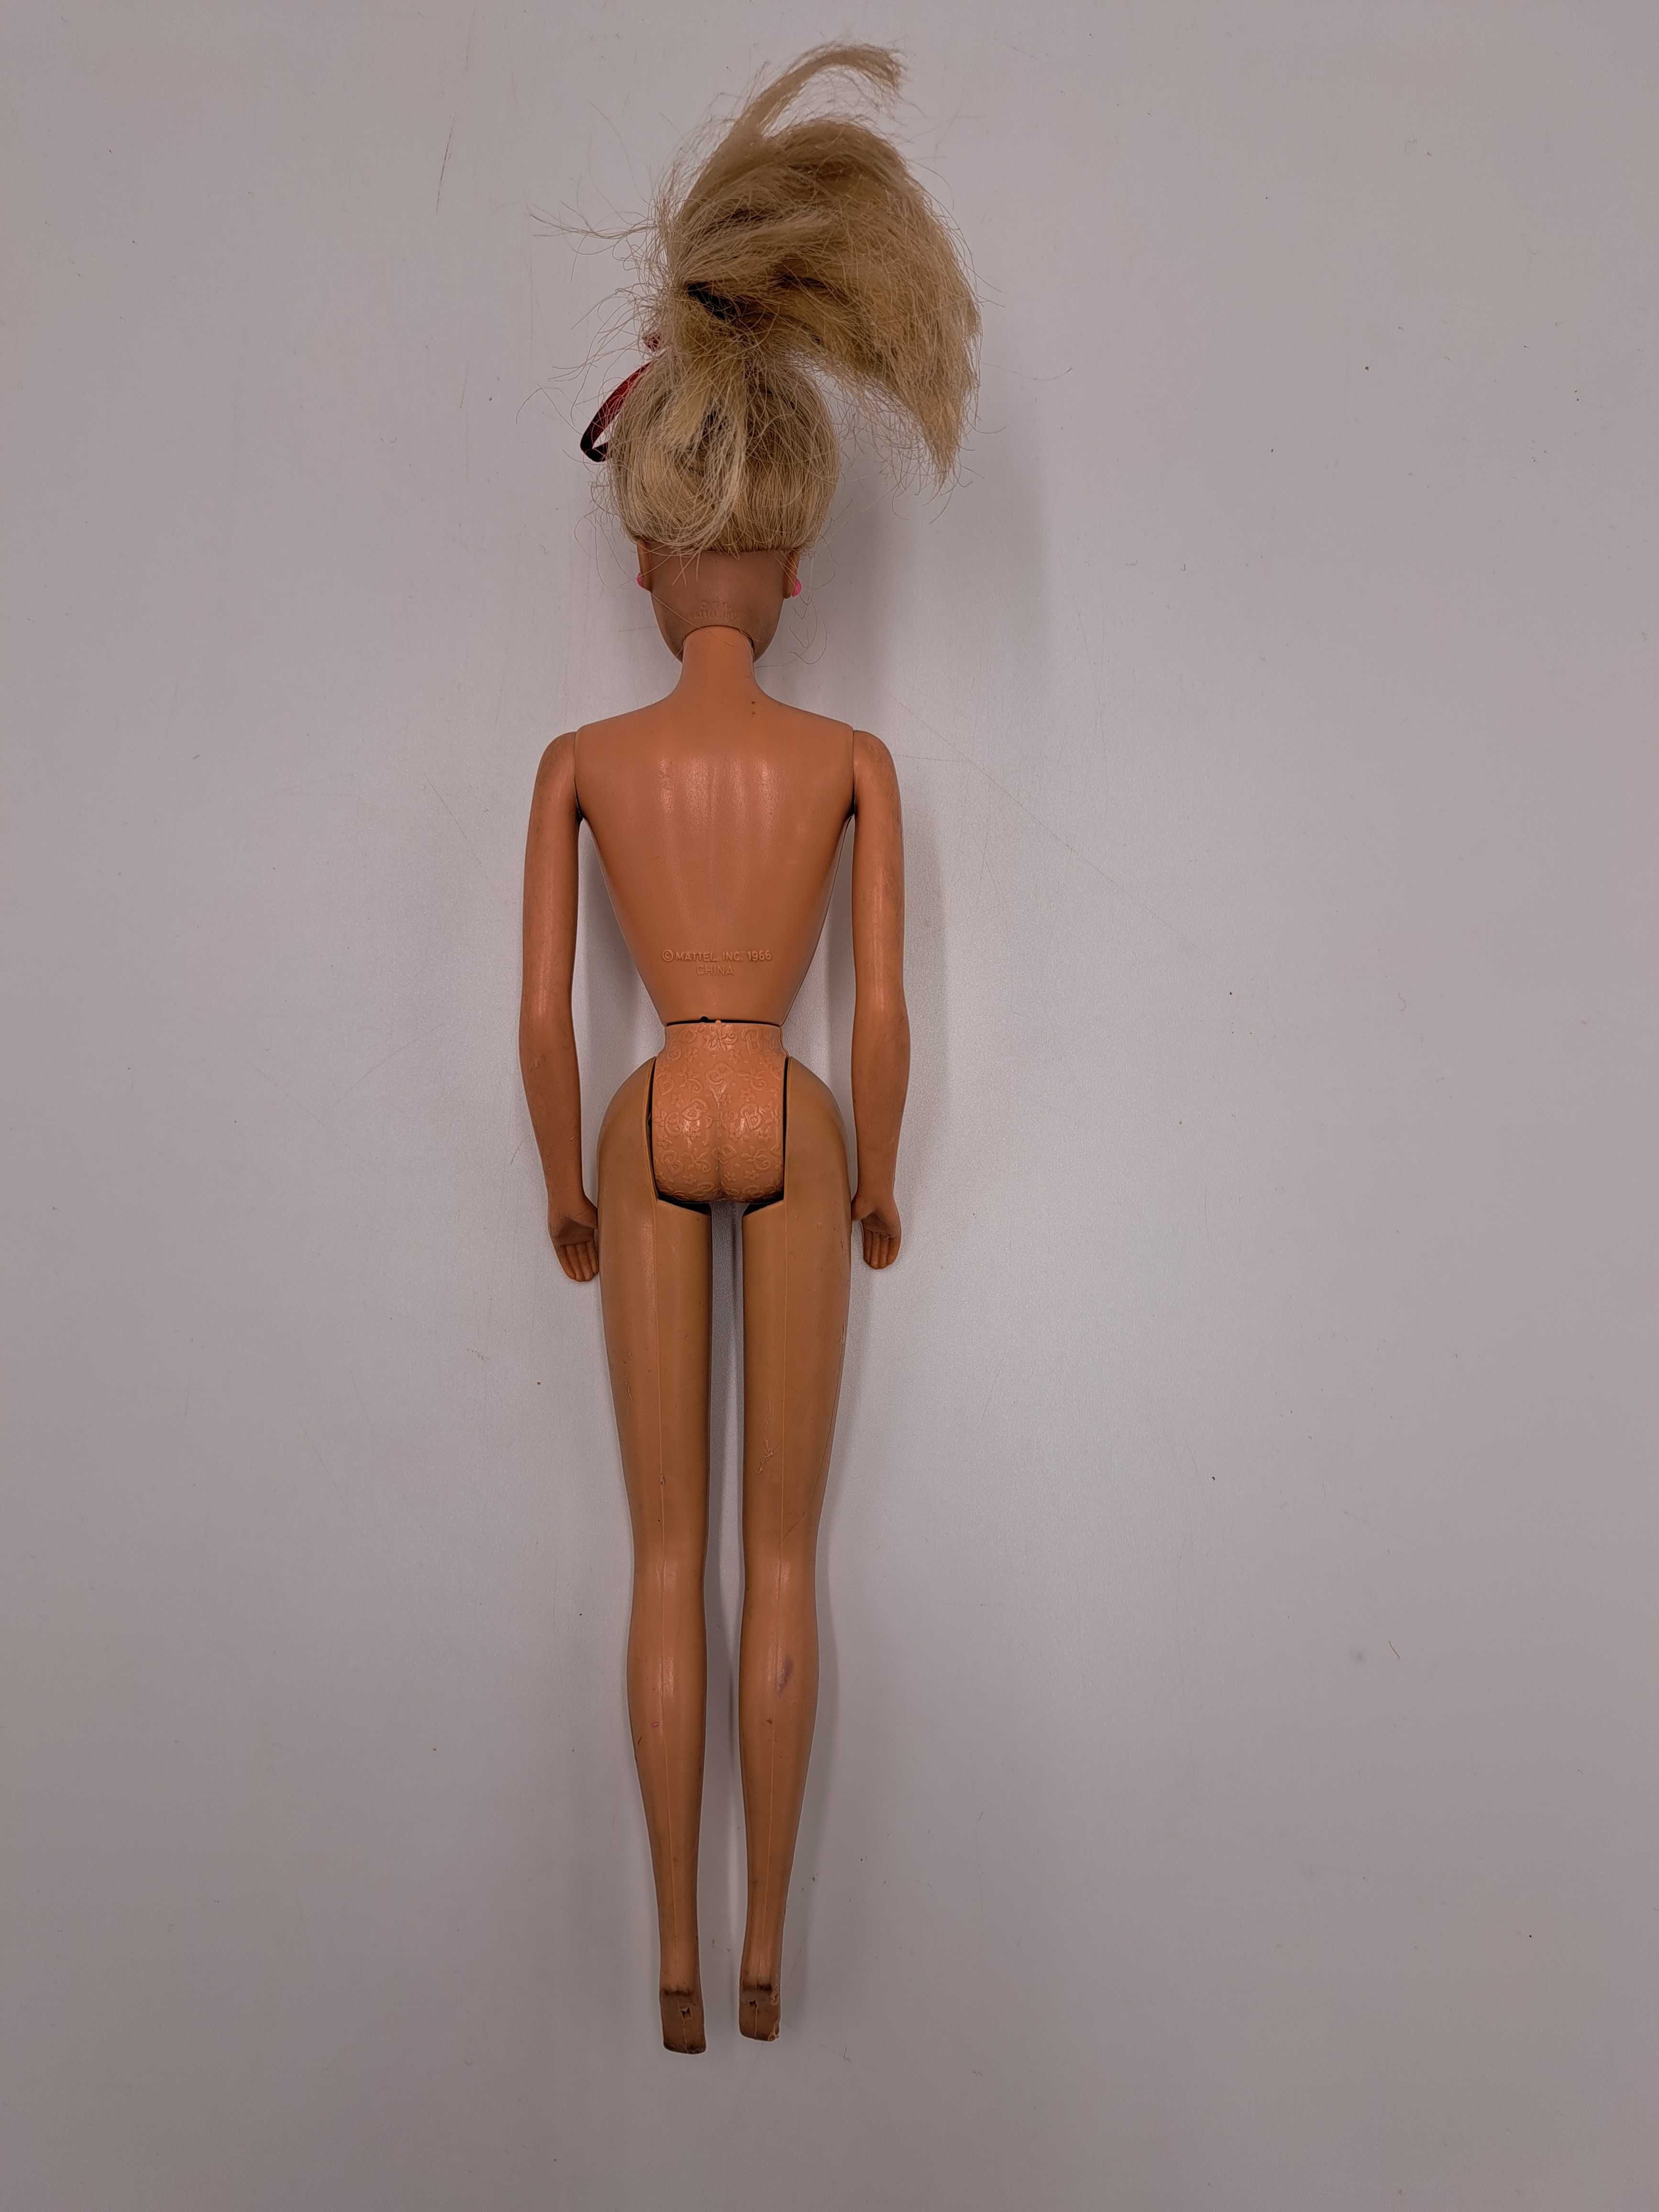 Lalka Barbie kolekcjonerska Mattel 1966/1976 vintage